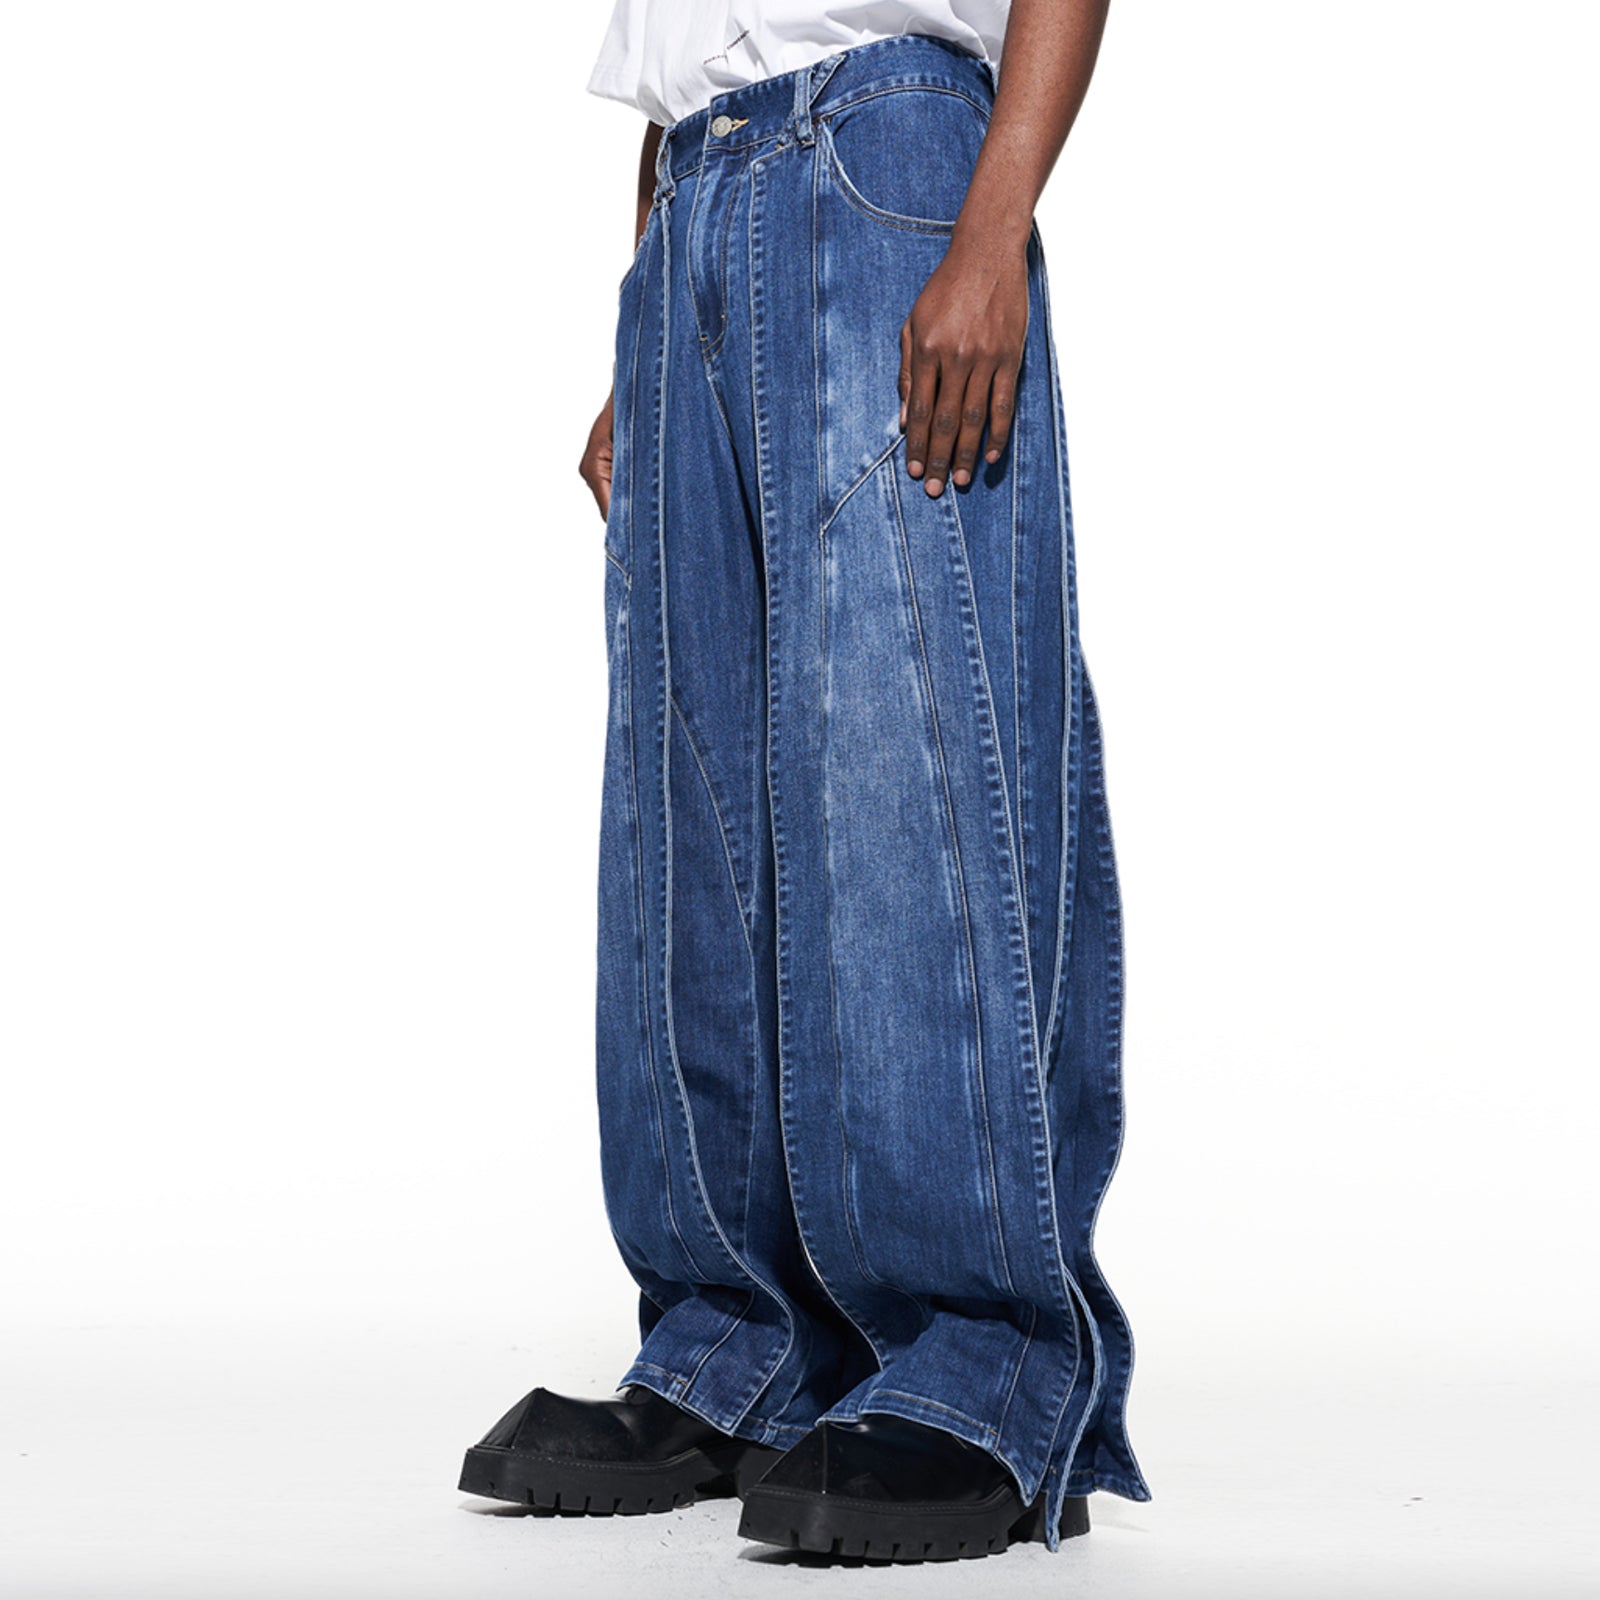 Hype Streetwear Multi-Panel Baggy Jeans